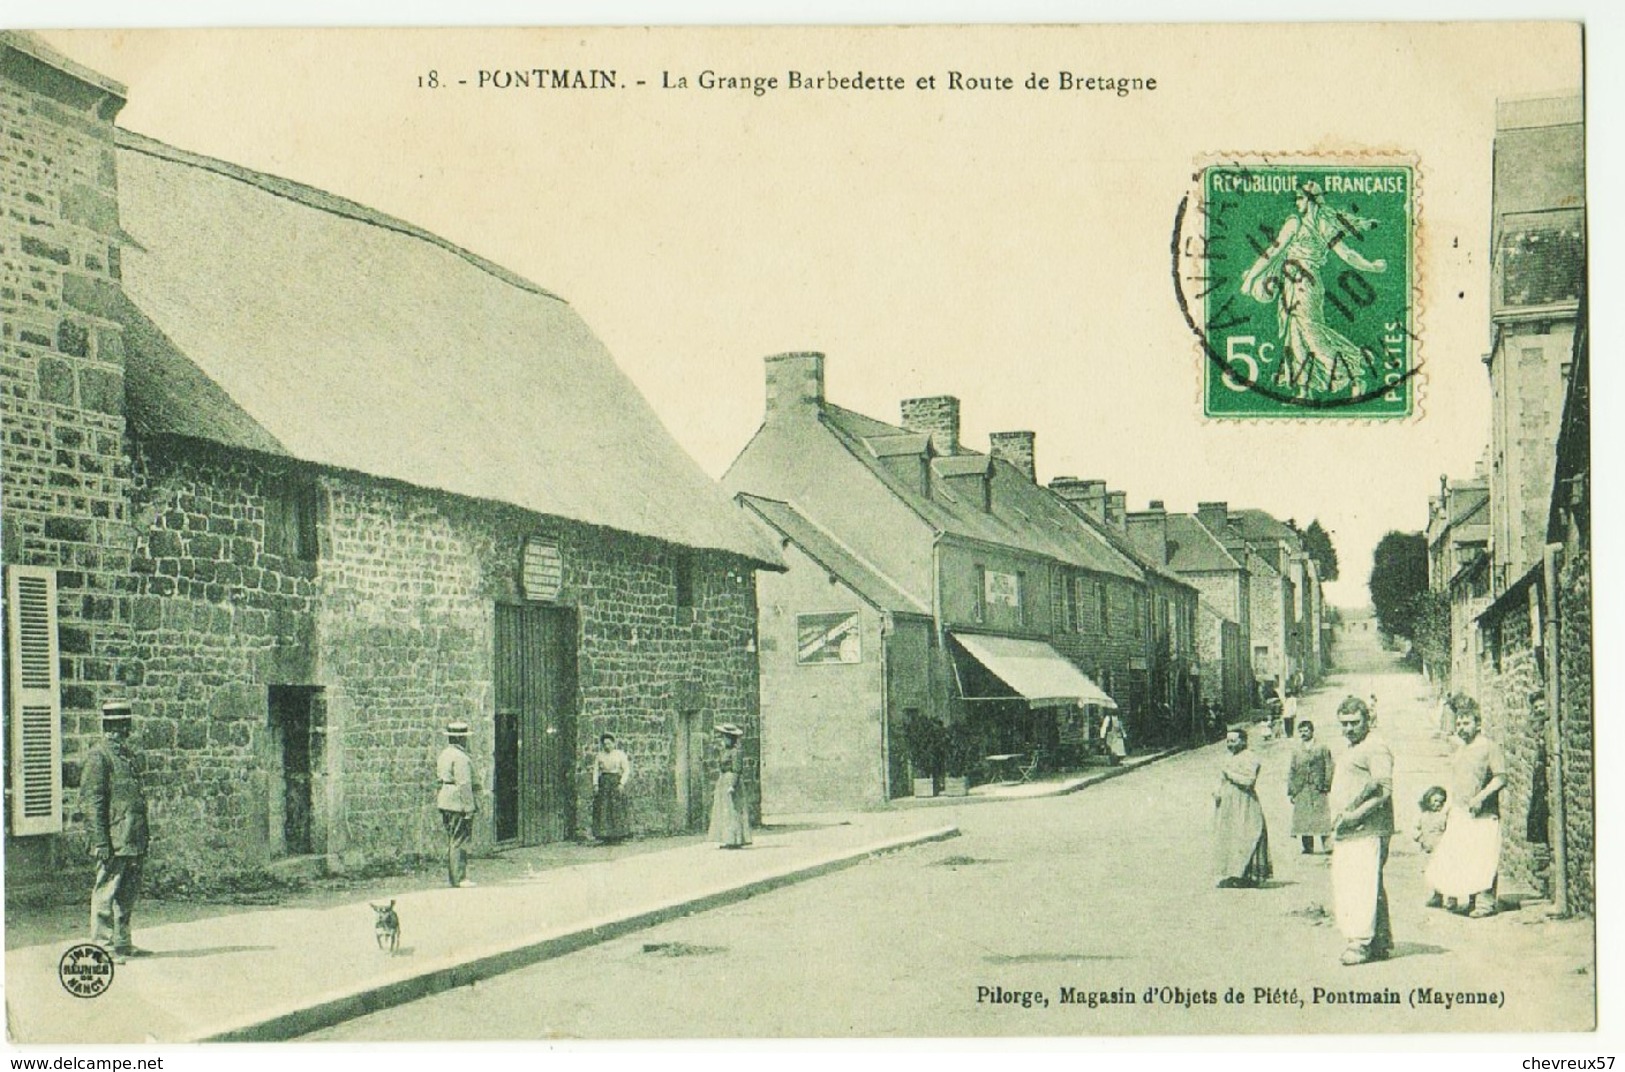 LOT 11 - VILLES ET VILLAGES DE FRANCE - 35 cartes anciennes - Villages Normandie